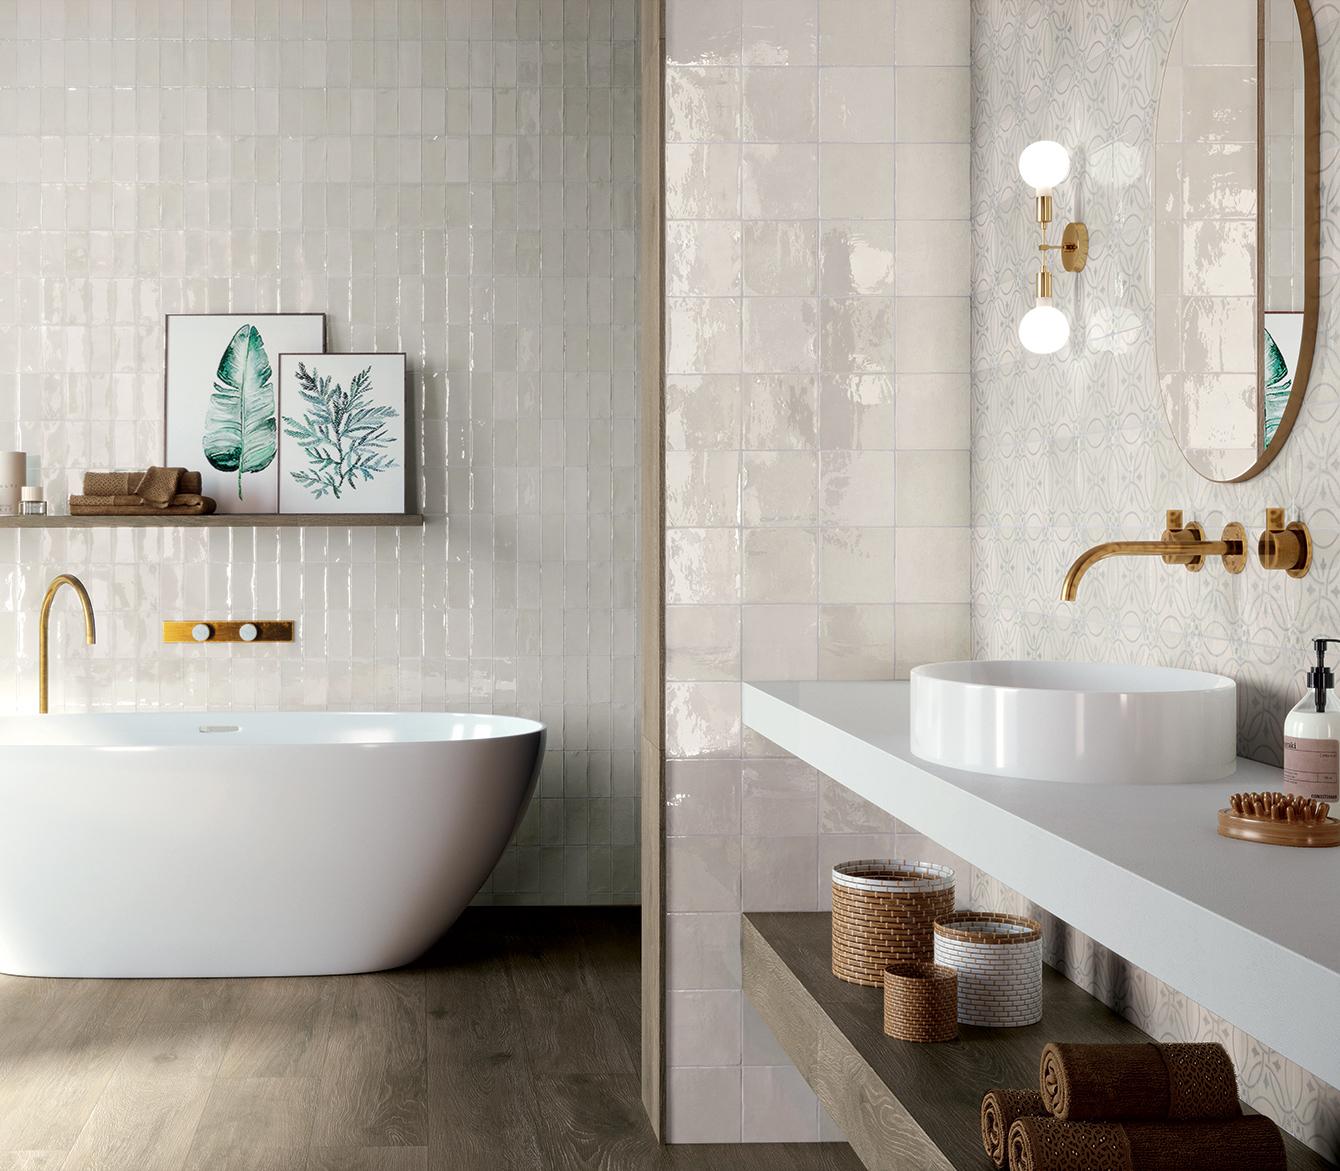 Salle de bain avec zelliges blancs au mur et effet bois pour le sol